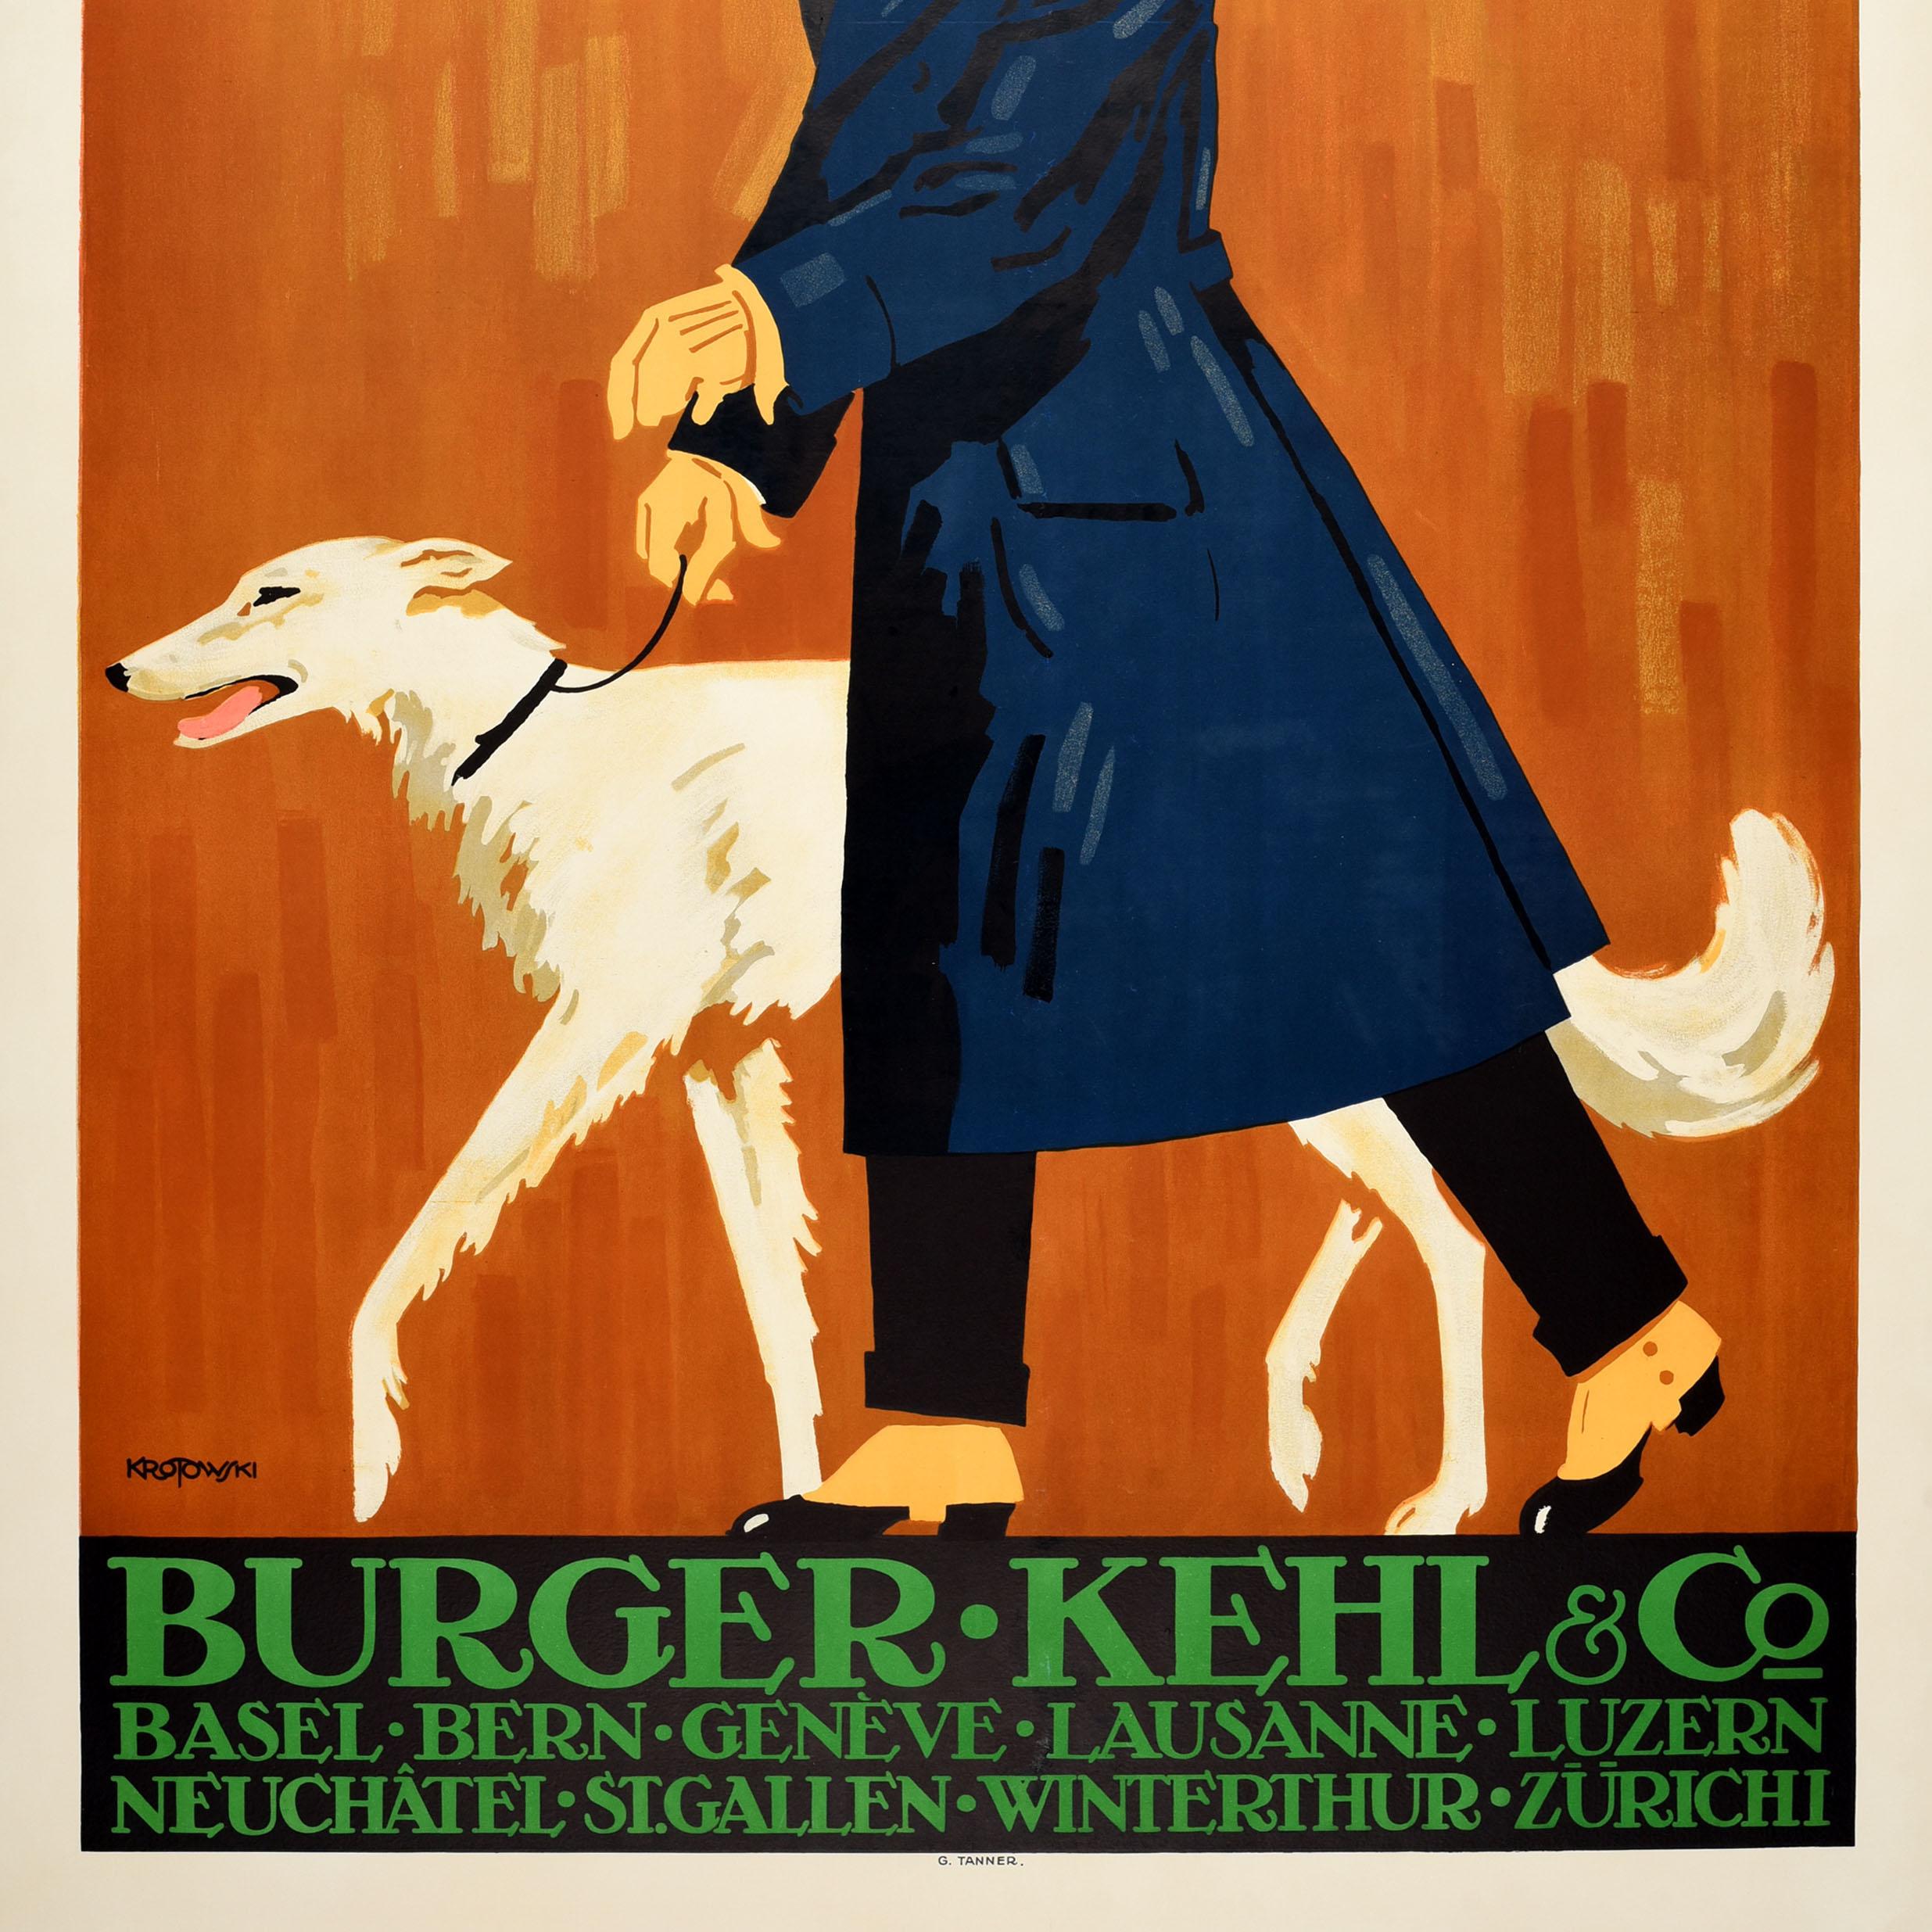 Affiche publicitaire originale et ancienne sur la mode masculine pour la marque PKZ Burger Kehl & Co. Elle présente un superbe design de Stephan Krotowski (1881-1948) représentant un homme bien habillé portant un long manteau bleu sur un costume